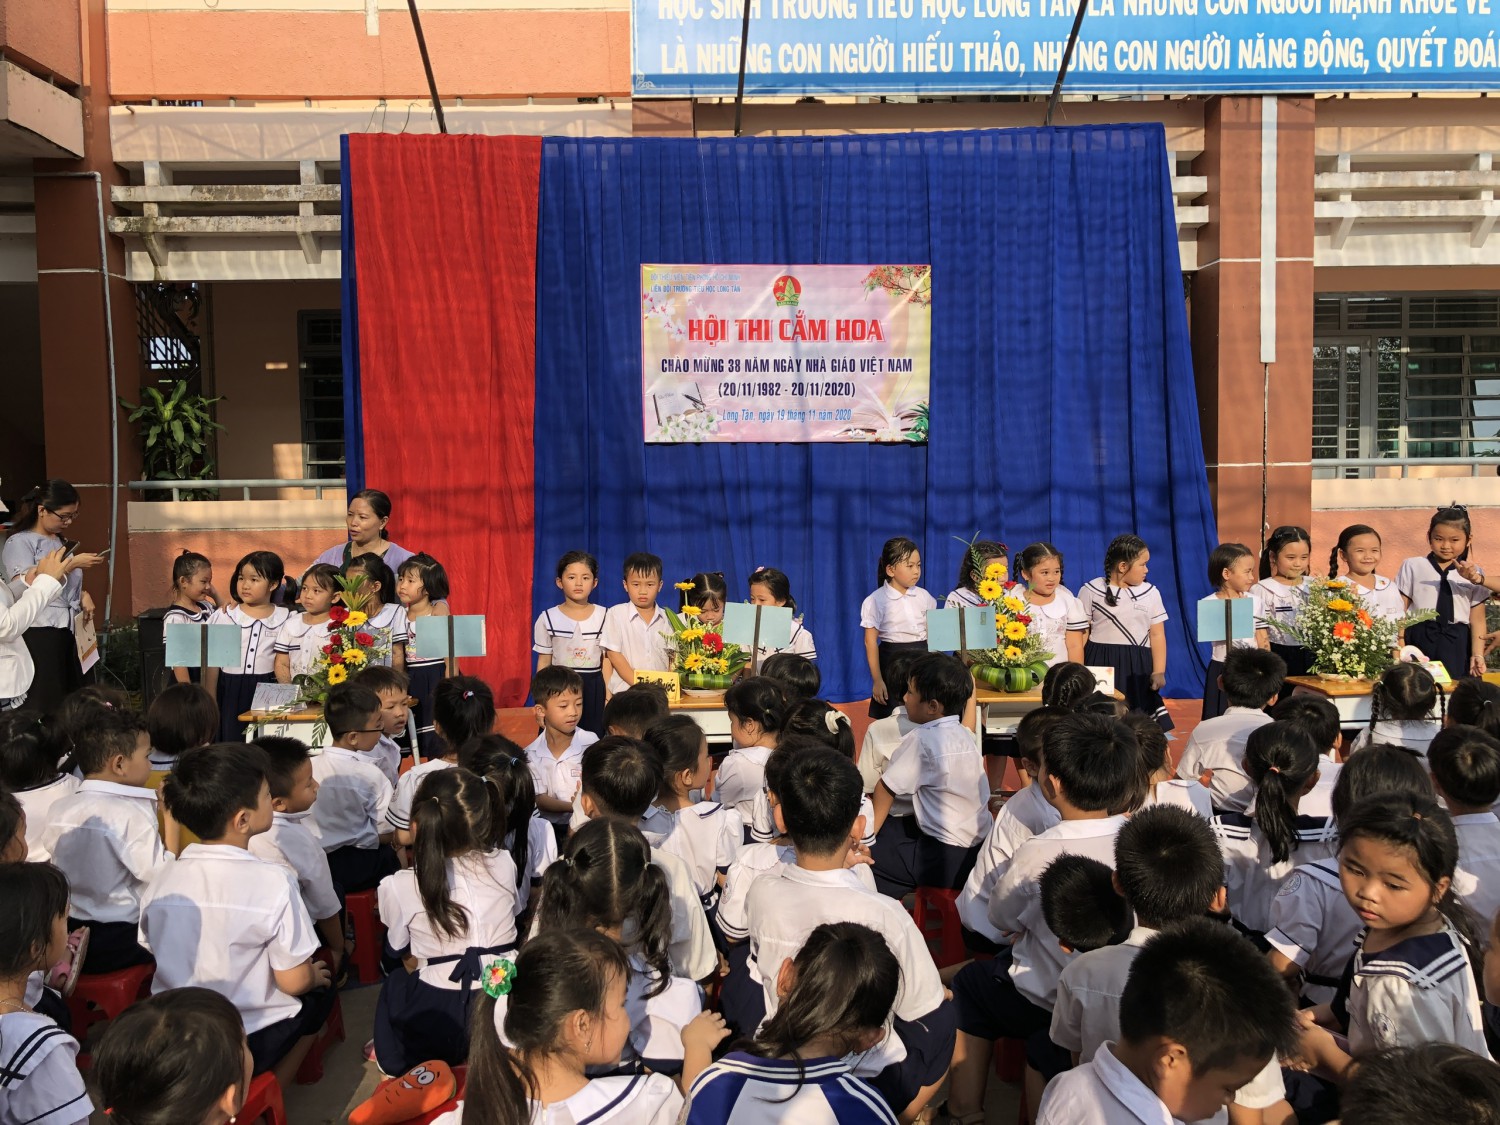 Hội thi cắm hoa chào mừng ngày Nhà giáo Việt Nam 20/11/2020